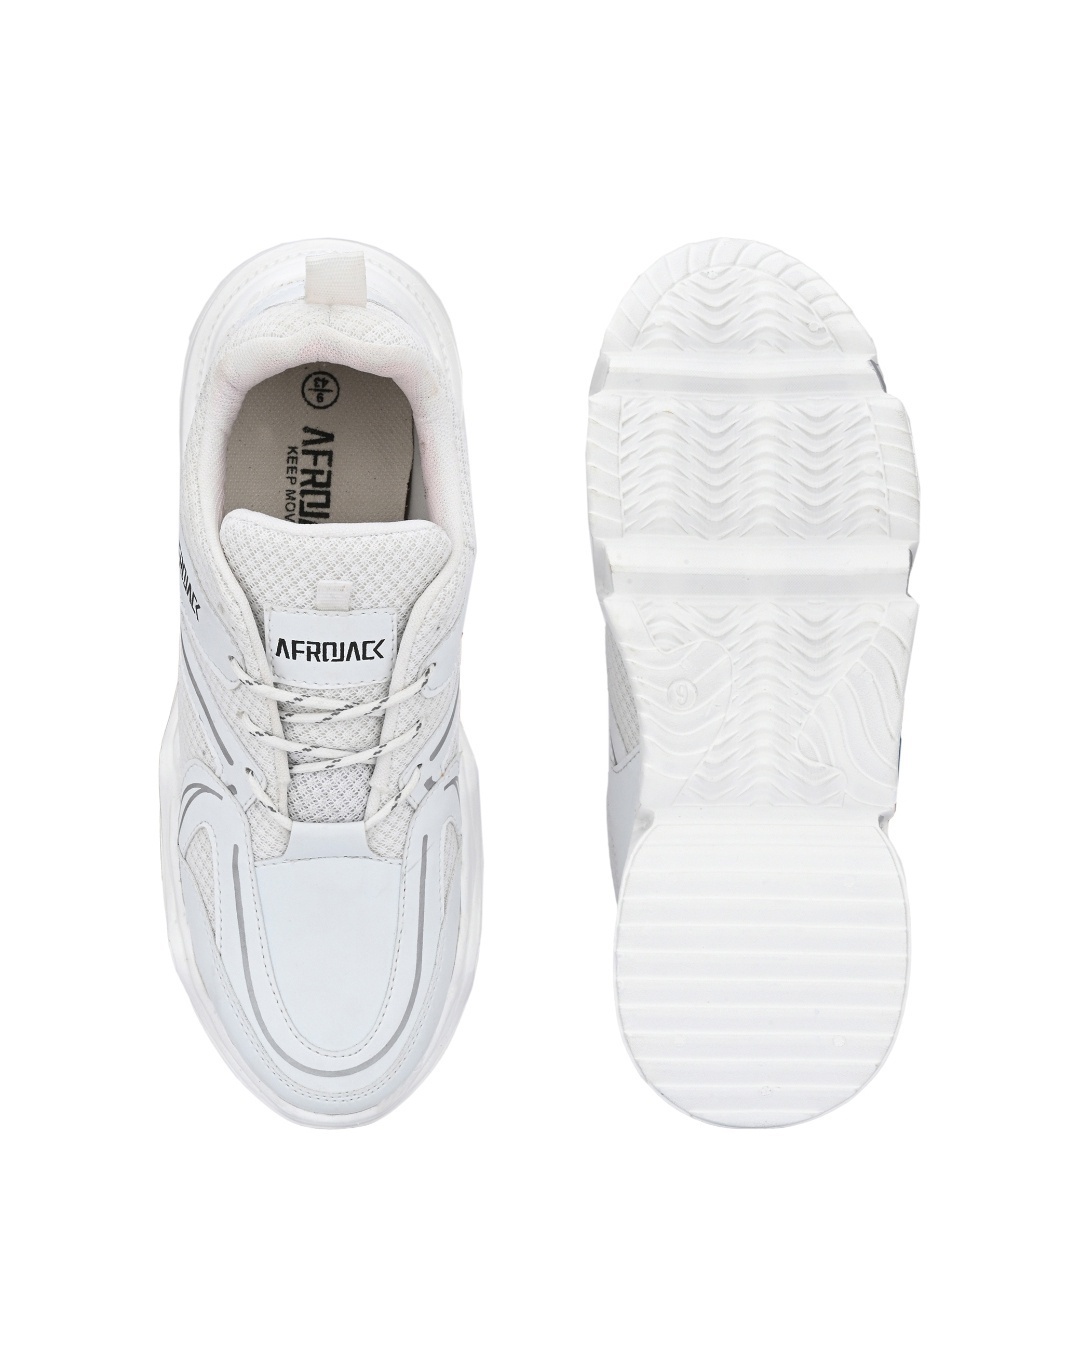 Shop Men's White Mesh Lace-Ups Sports Shoes